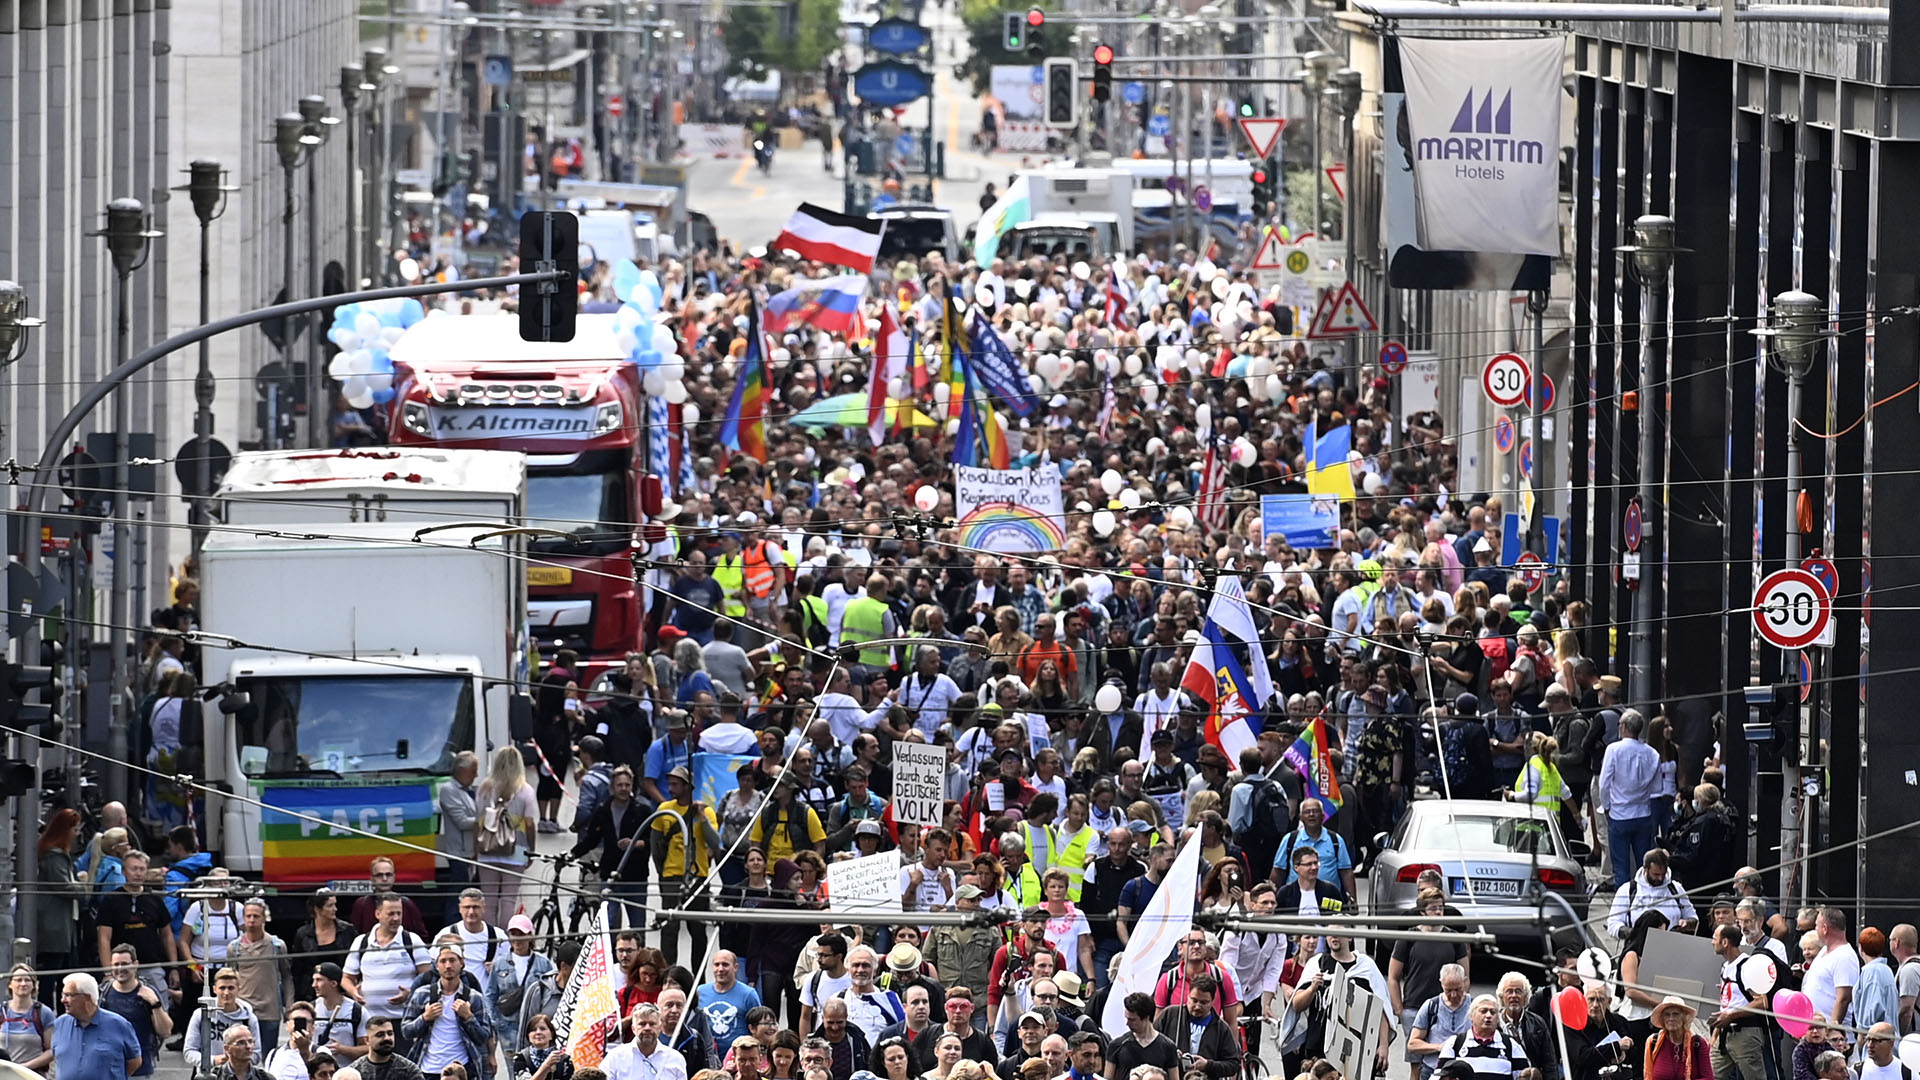 Unas 18.000 personas se congregaron al inicio de la marcha (John MACDOUGALL / AFP)